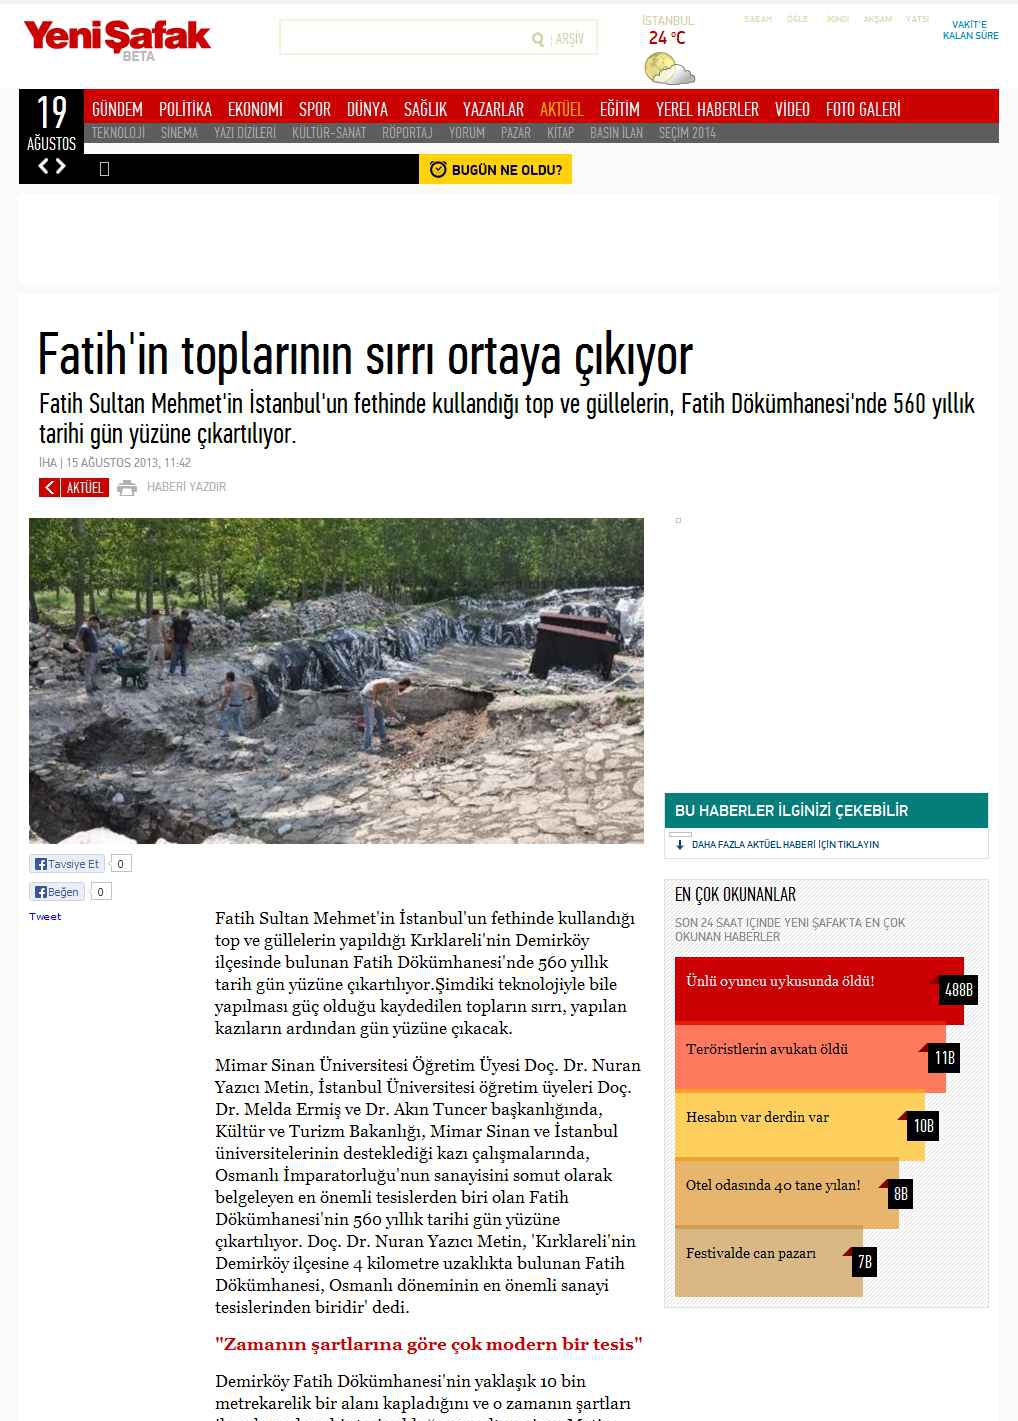 Portal Adres FATIH'IN TOPLARININ SIRRI ORTAYA ÇIKIYOR : www.yenisafak.com.tr İçeriği : Gündem Tarih : 18.